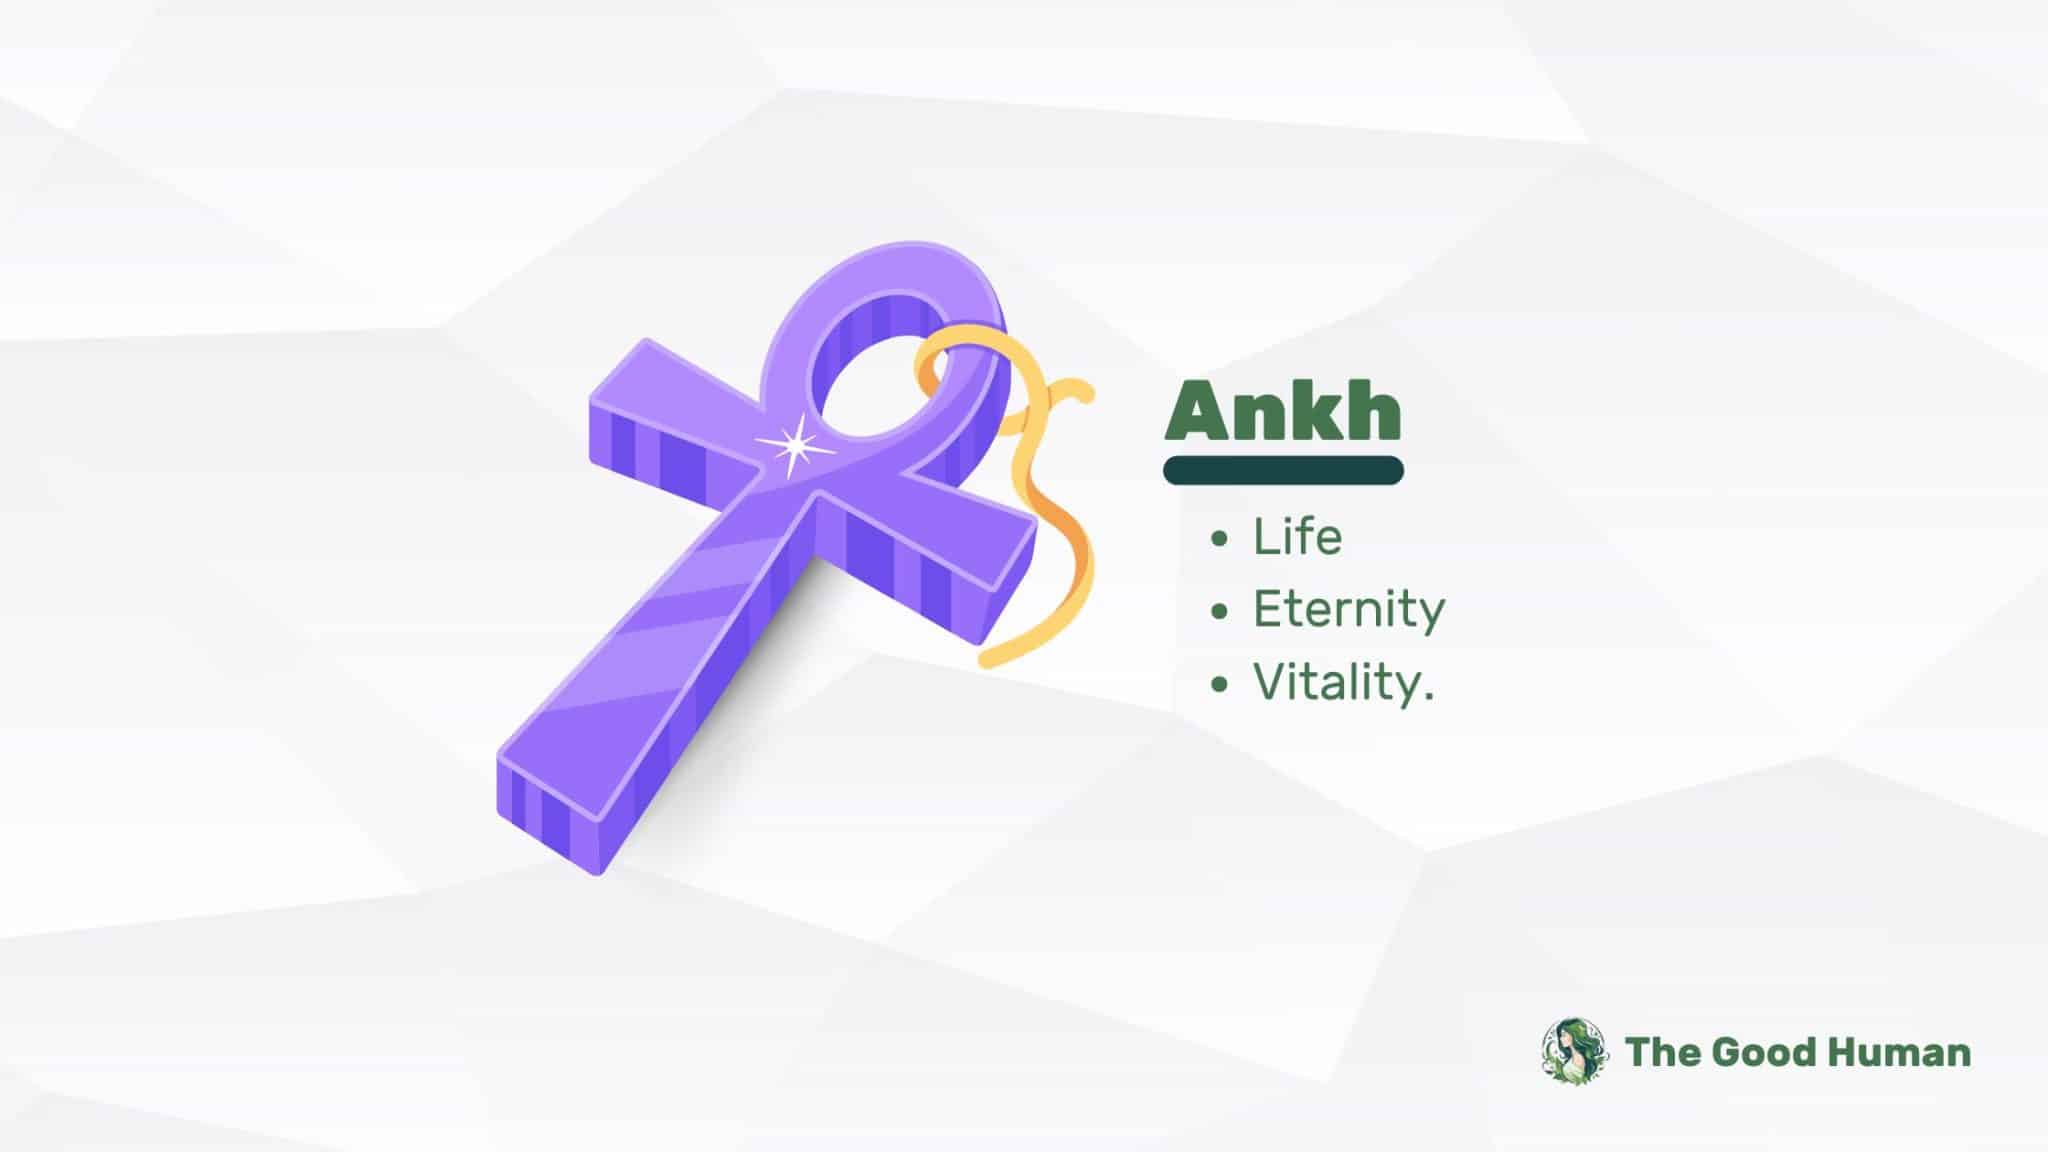 Ankh symbol